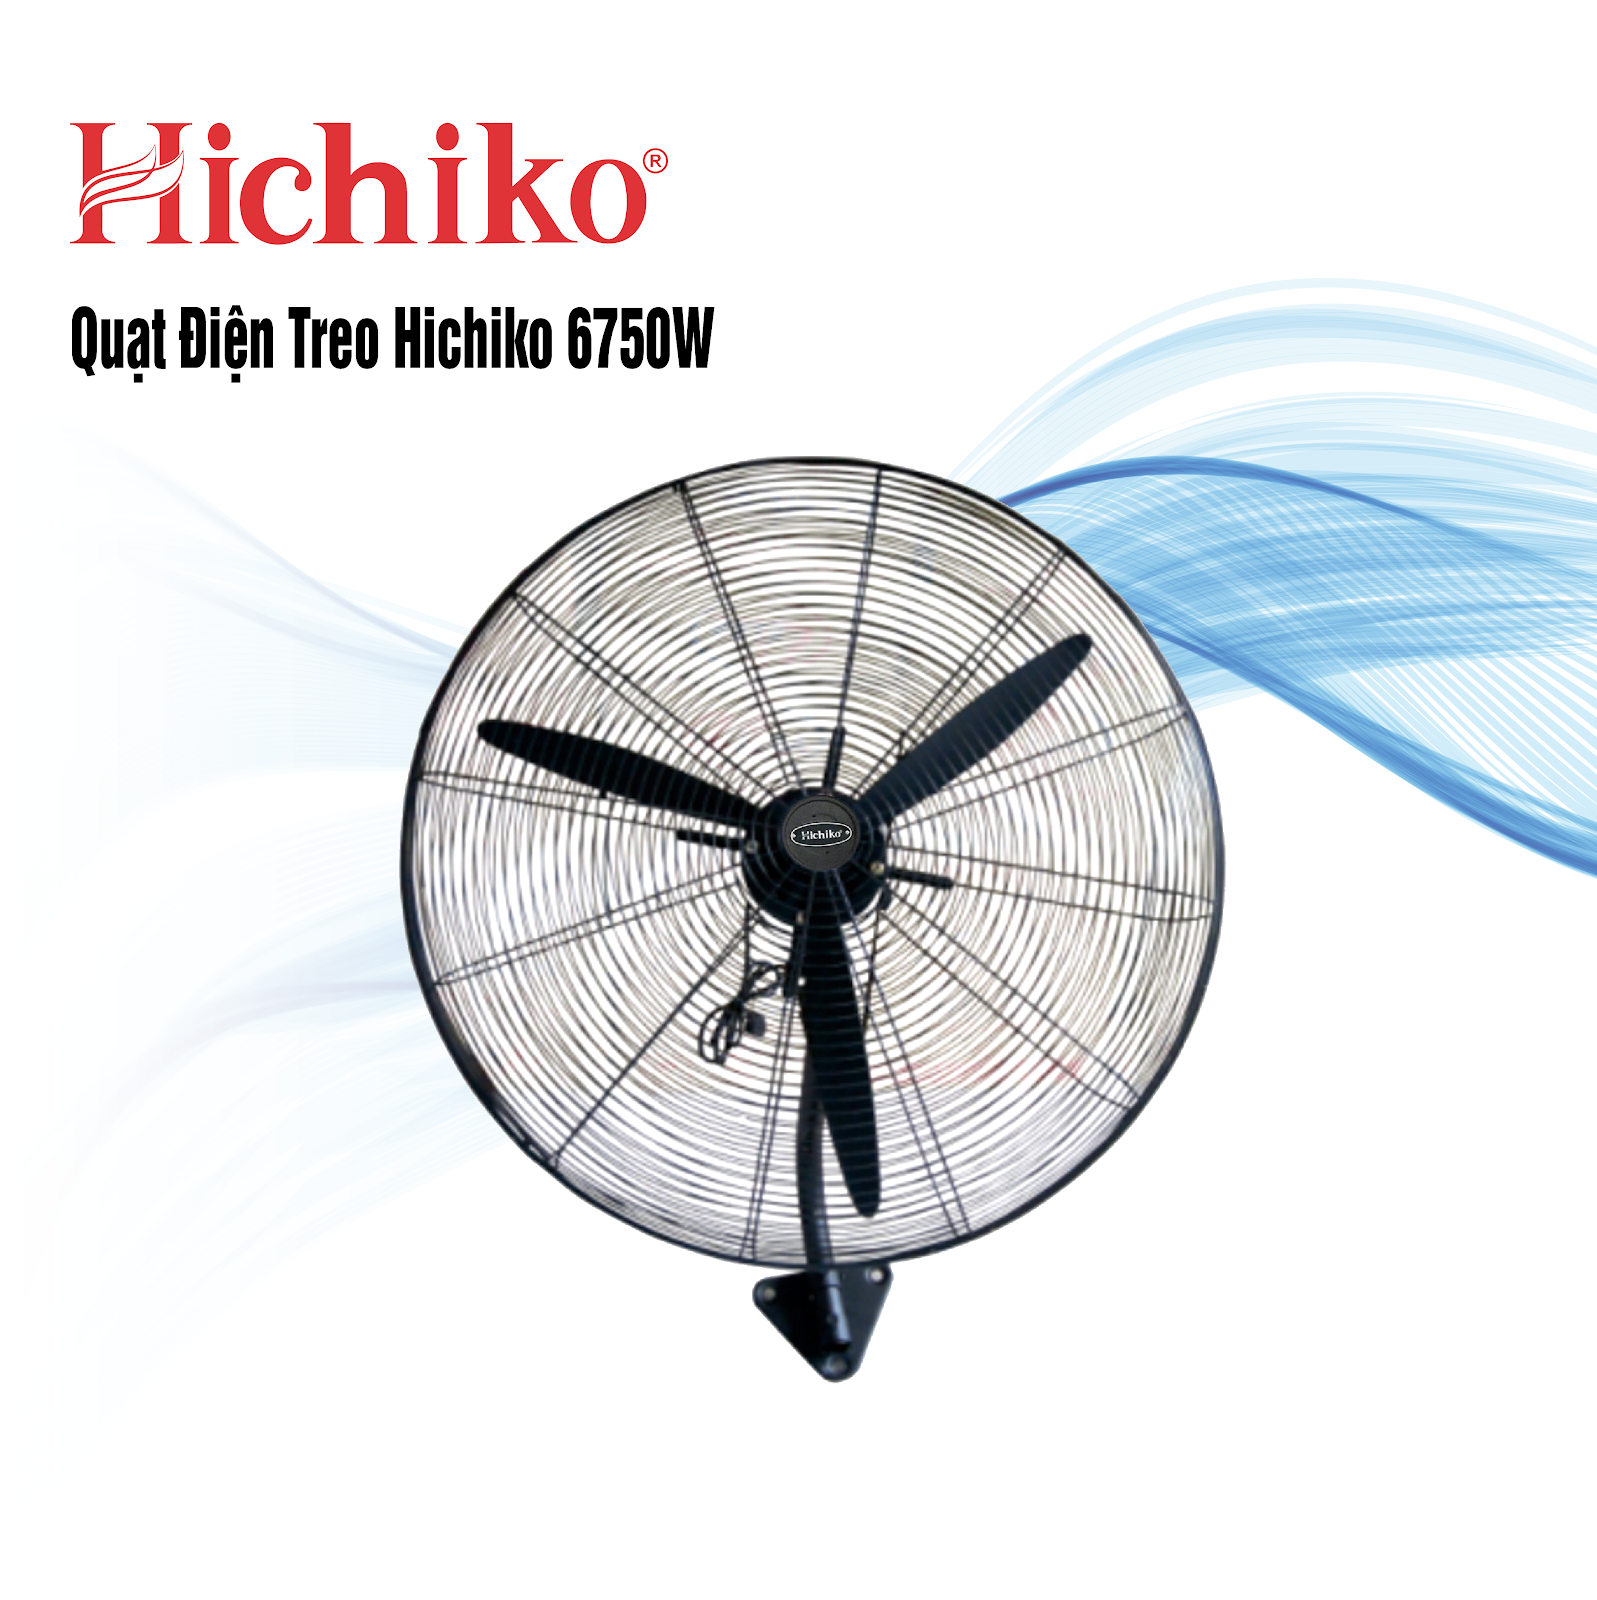 Quạt treo công nghiệp Hichiko HC-6750W (Ảnh 1)